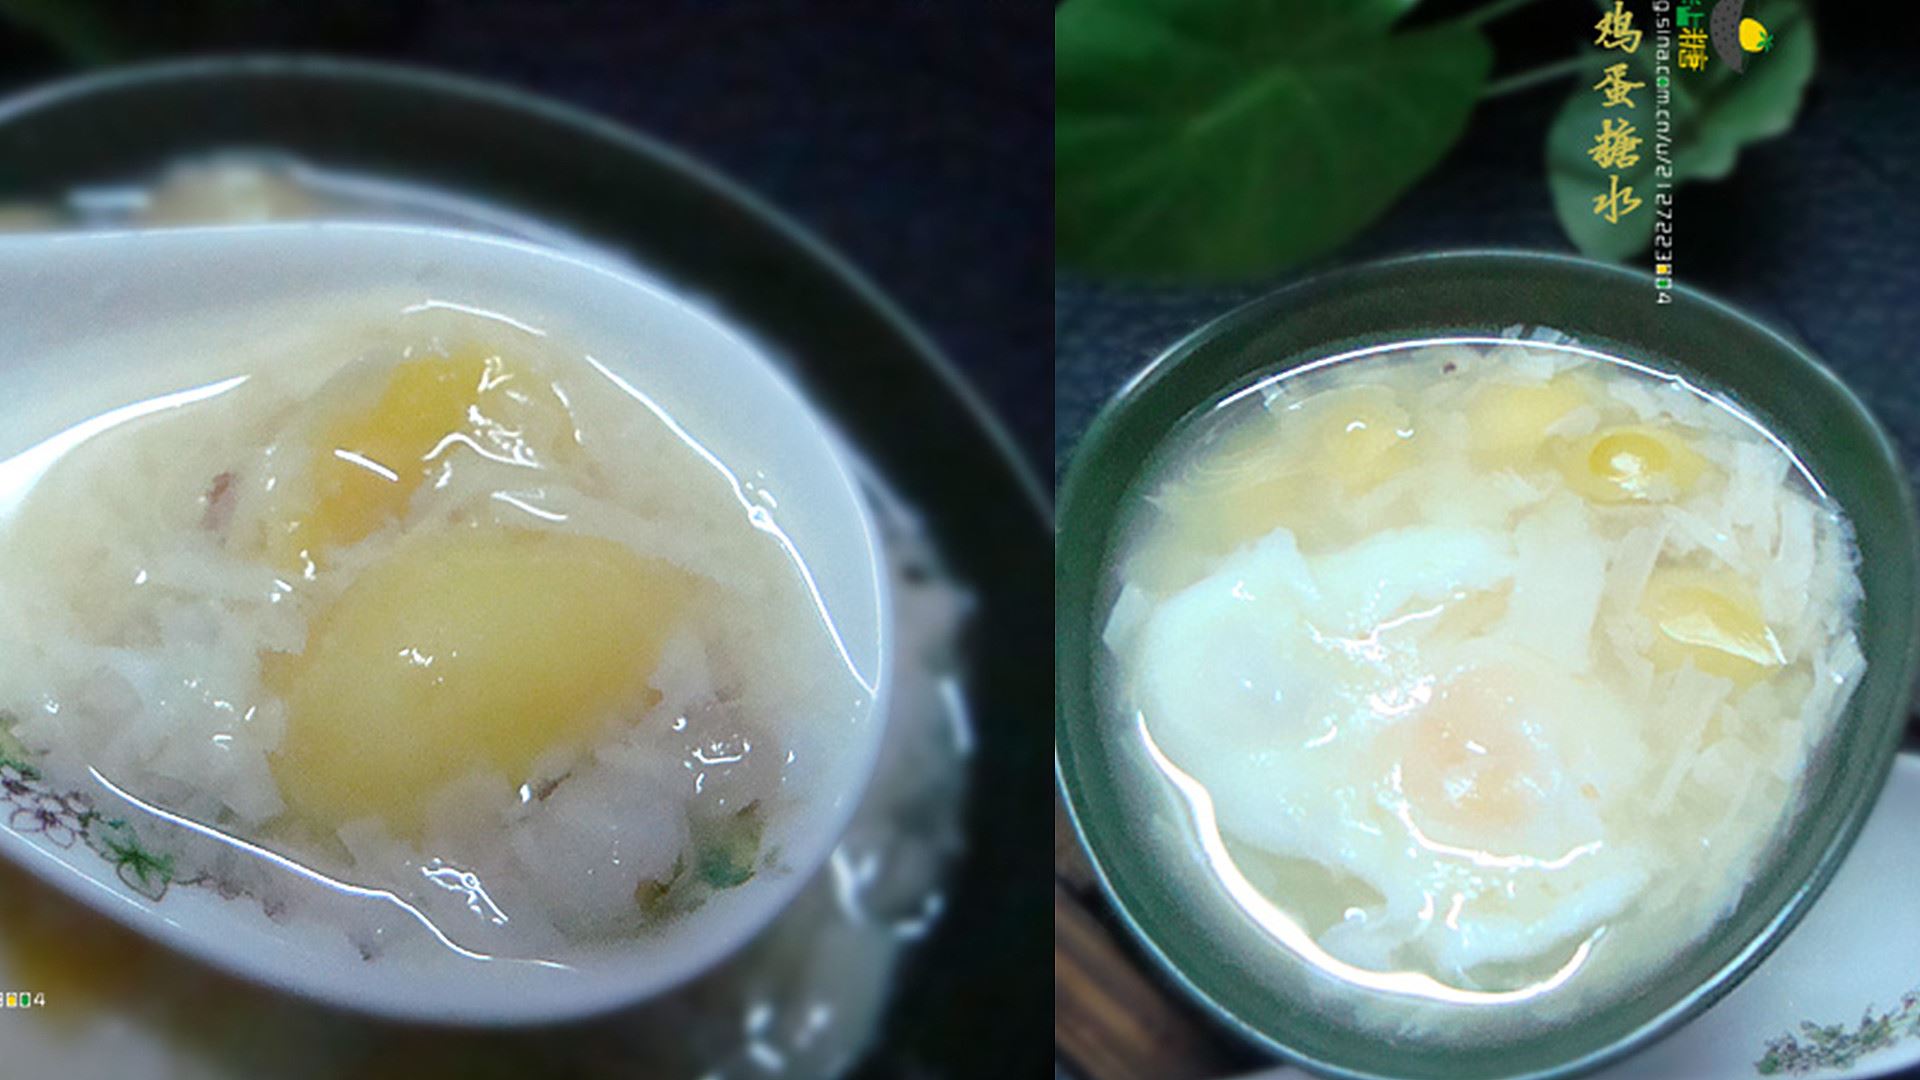 Sicikitchen: 【糖水篇】 腐竹白果薏米糖水